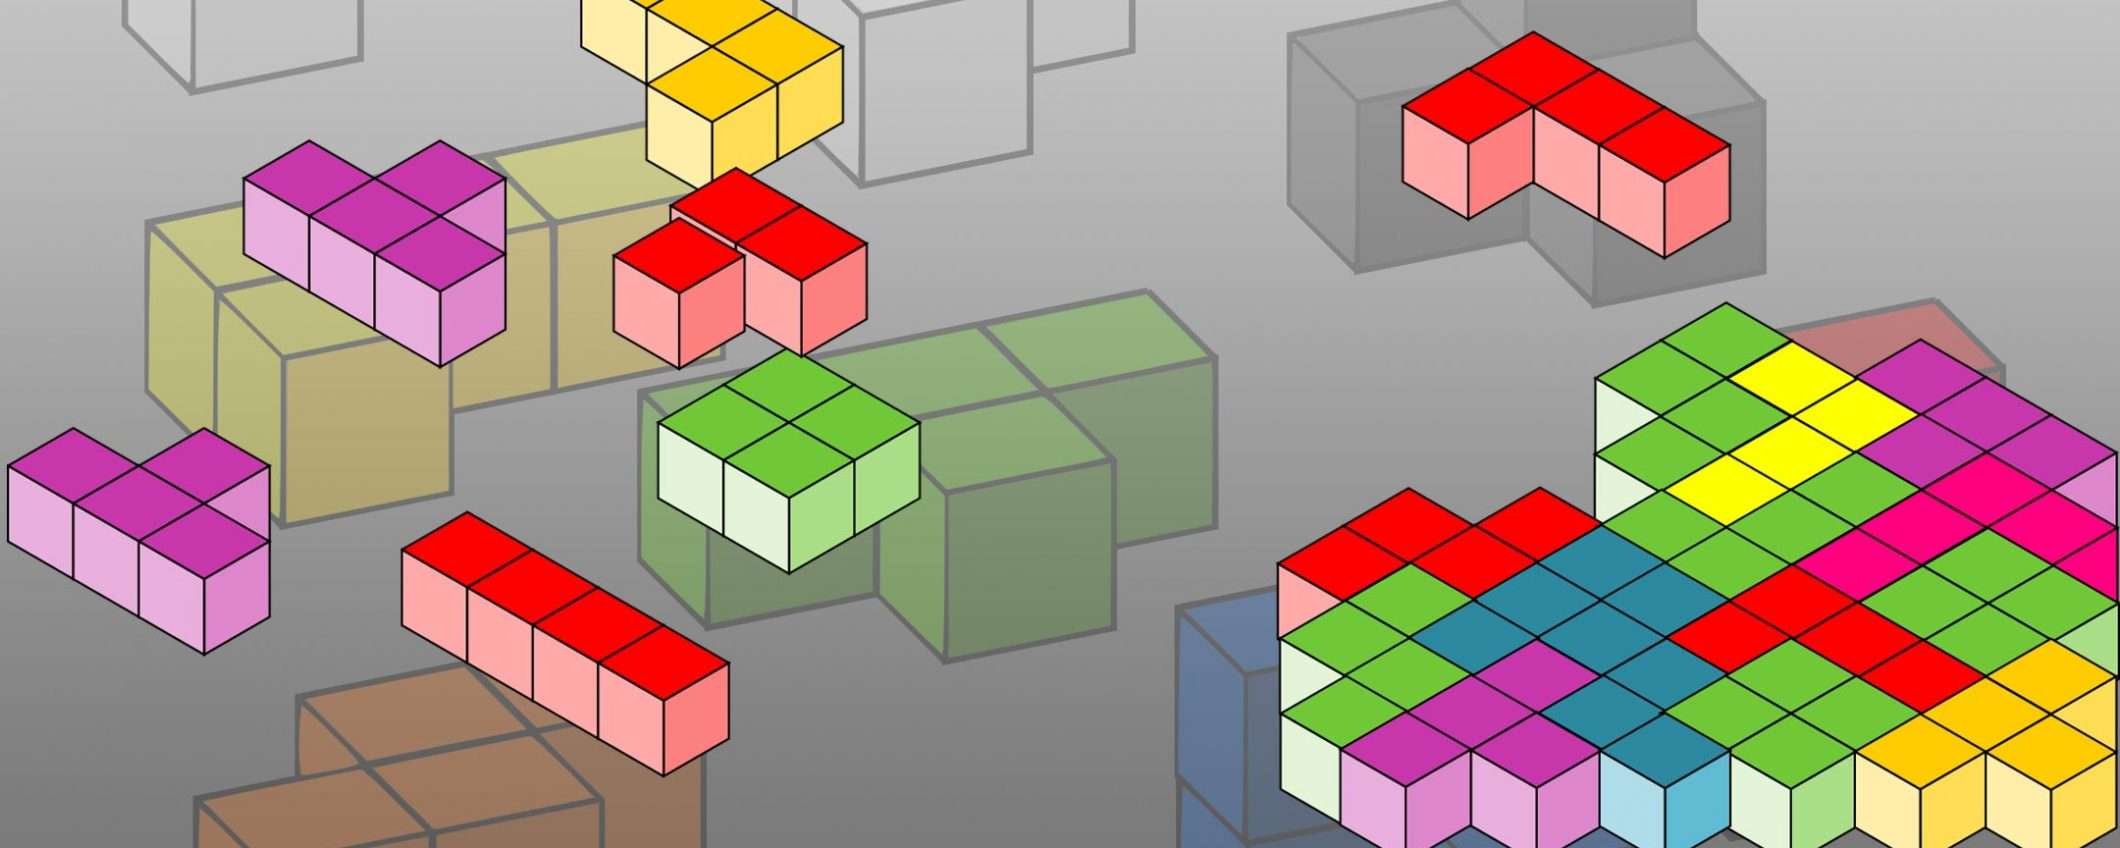 Tetris compie 35 anni, un classico senza tempo